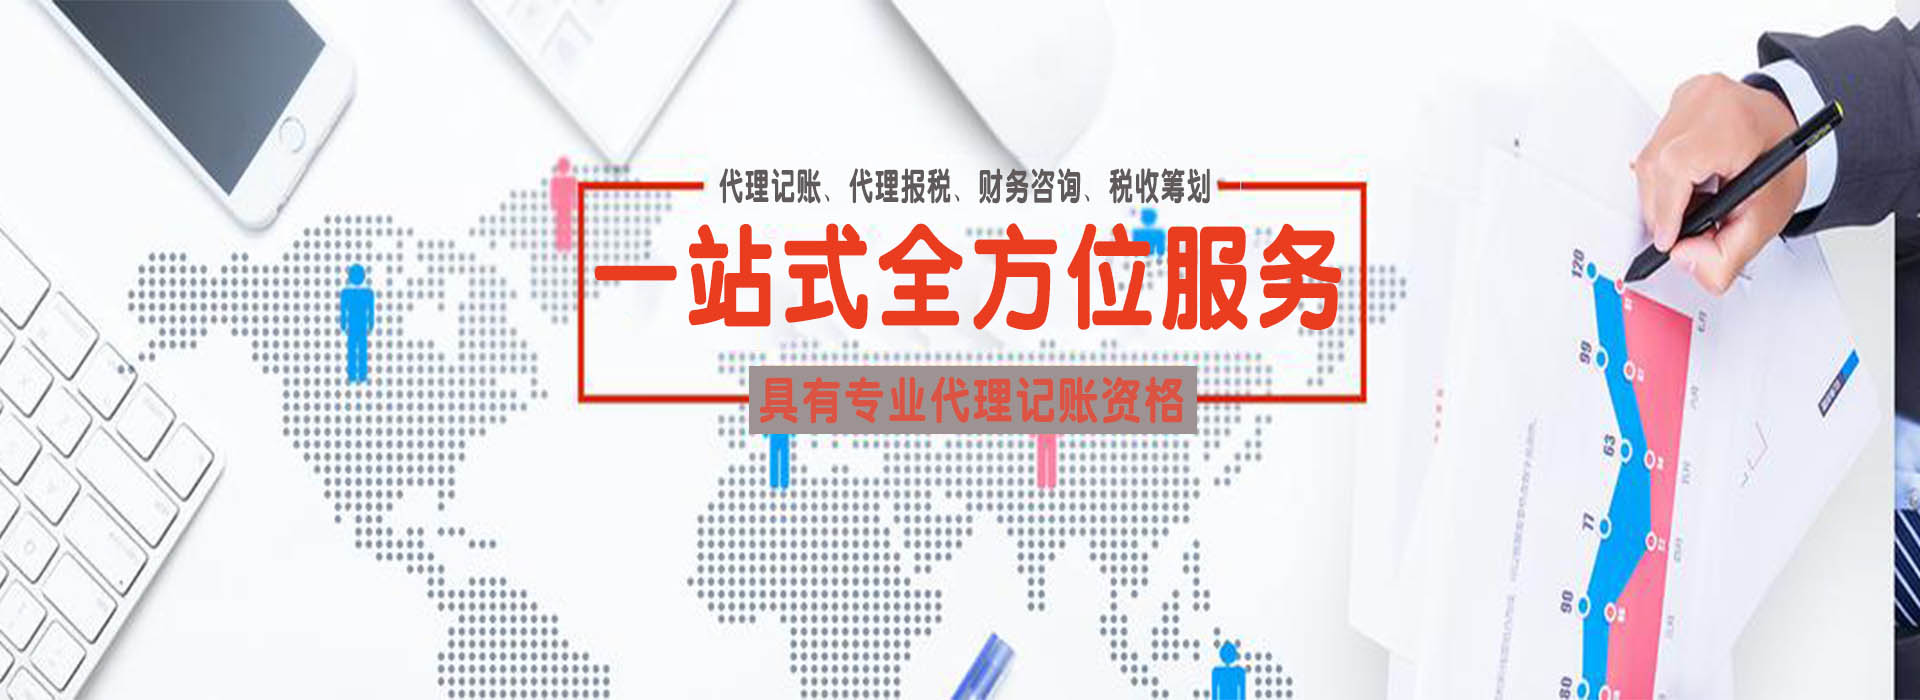 郑州市注册营业执照-公司注册-个体工商户注册-菲萍财税